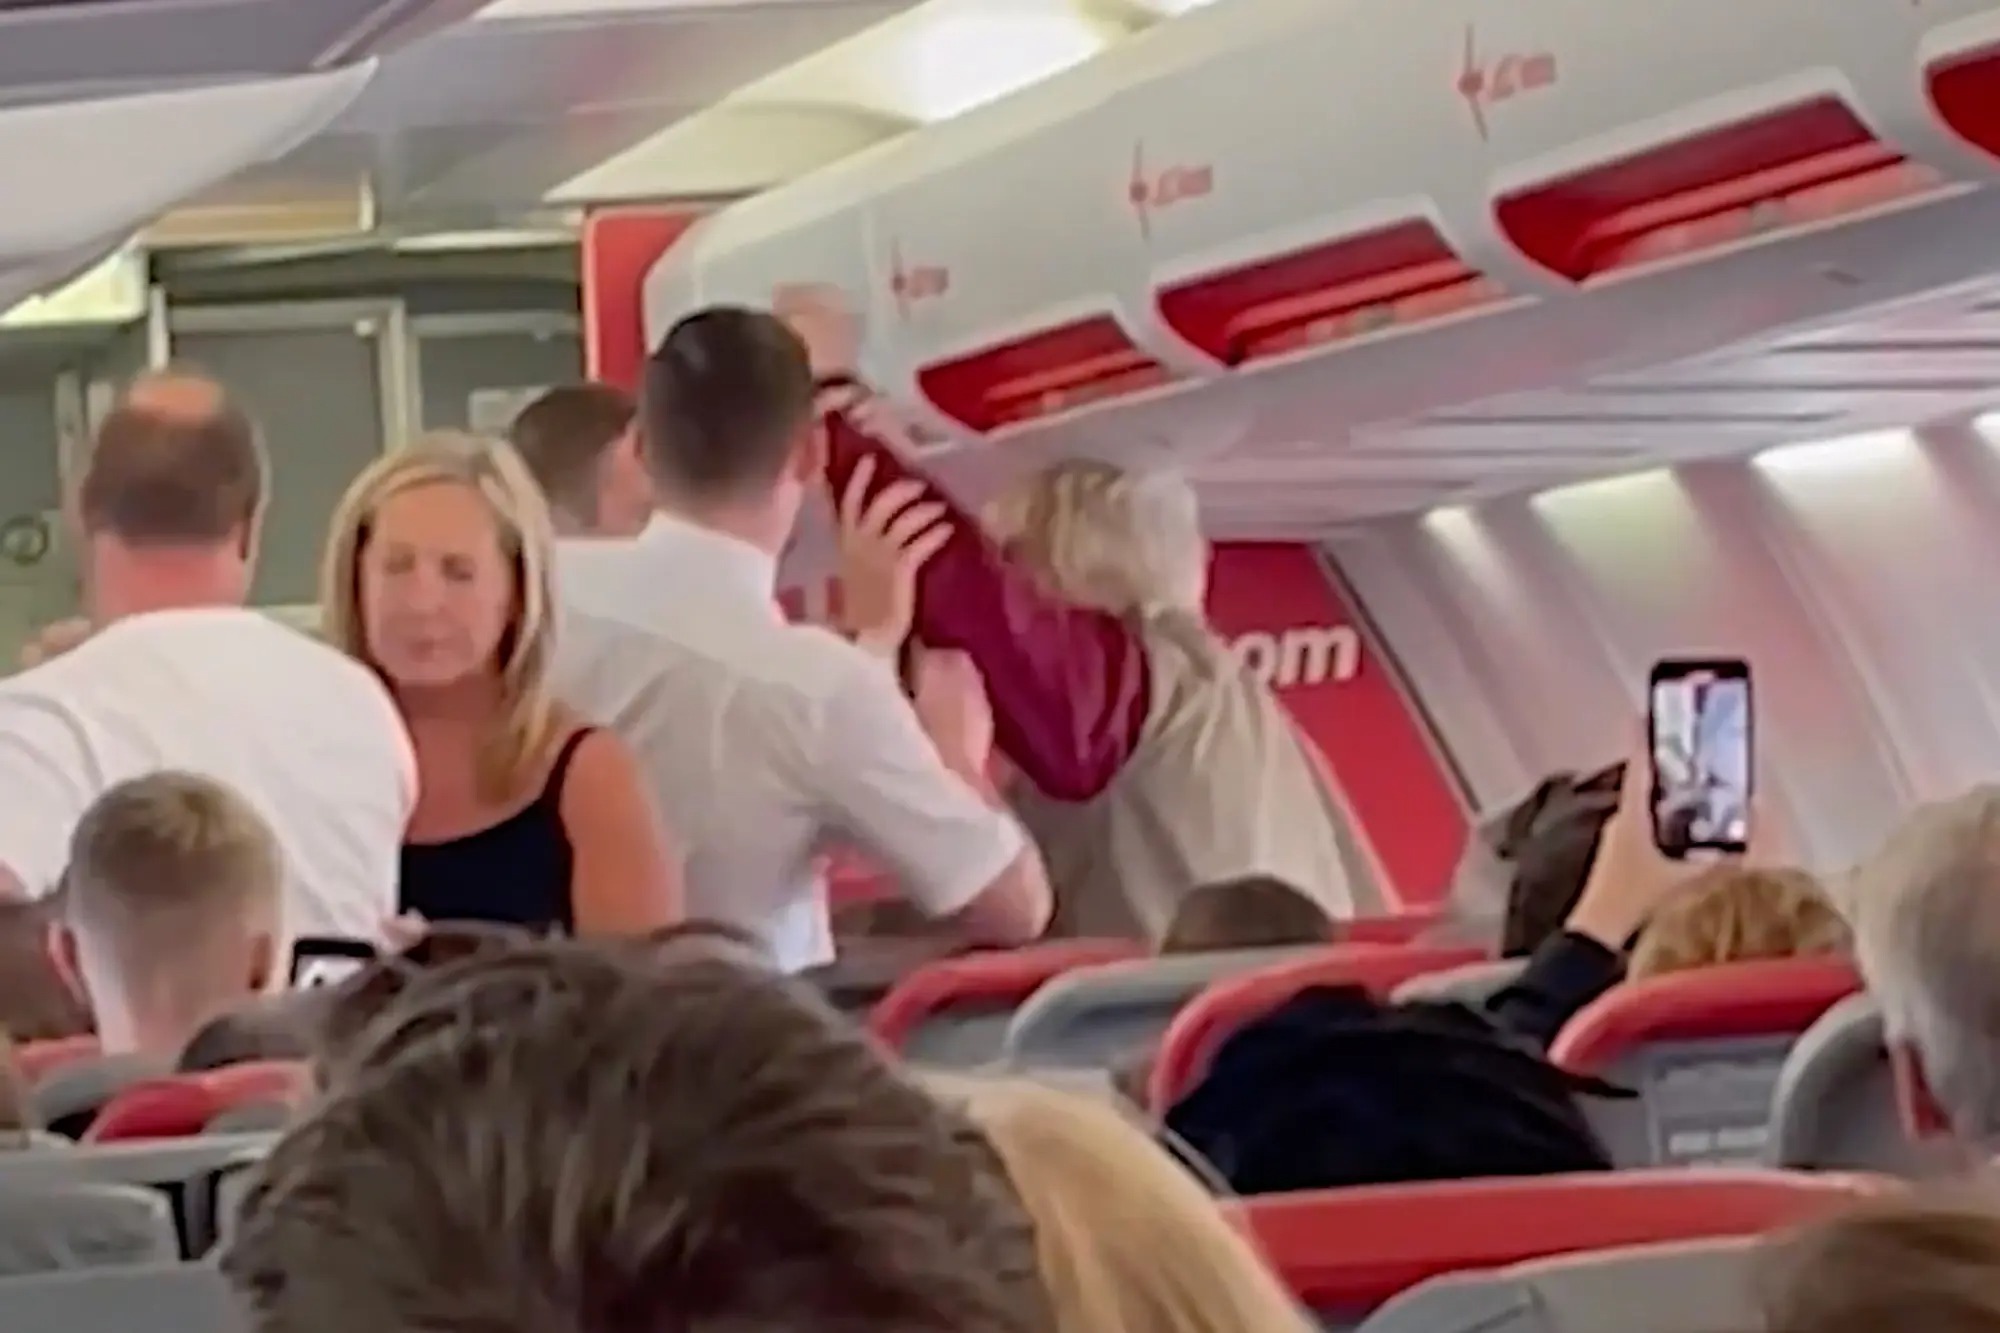 Asistente de vuelo le confiscó el trago a una anciana y todo terminó de la peor manera (VIDEO)